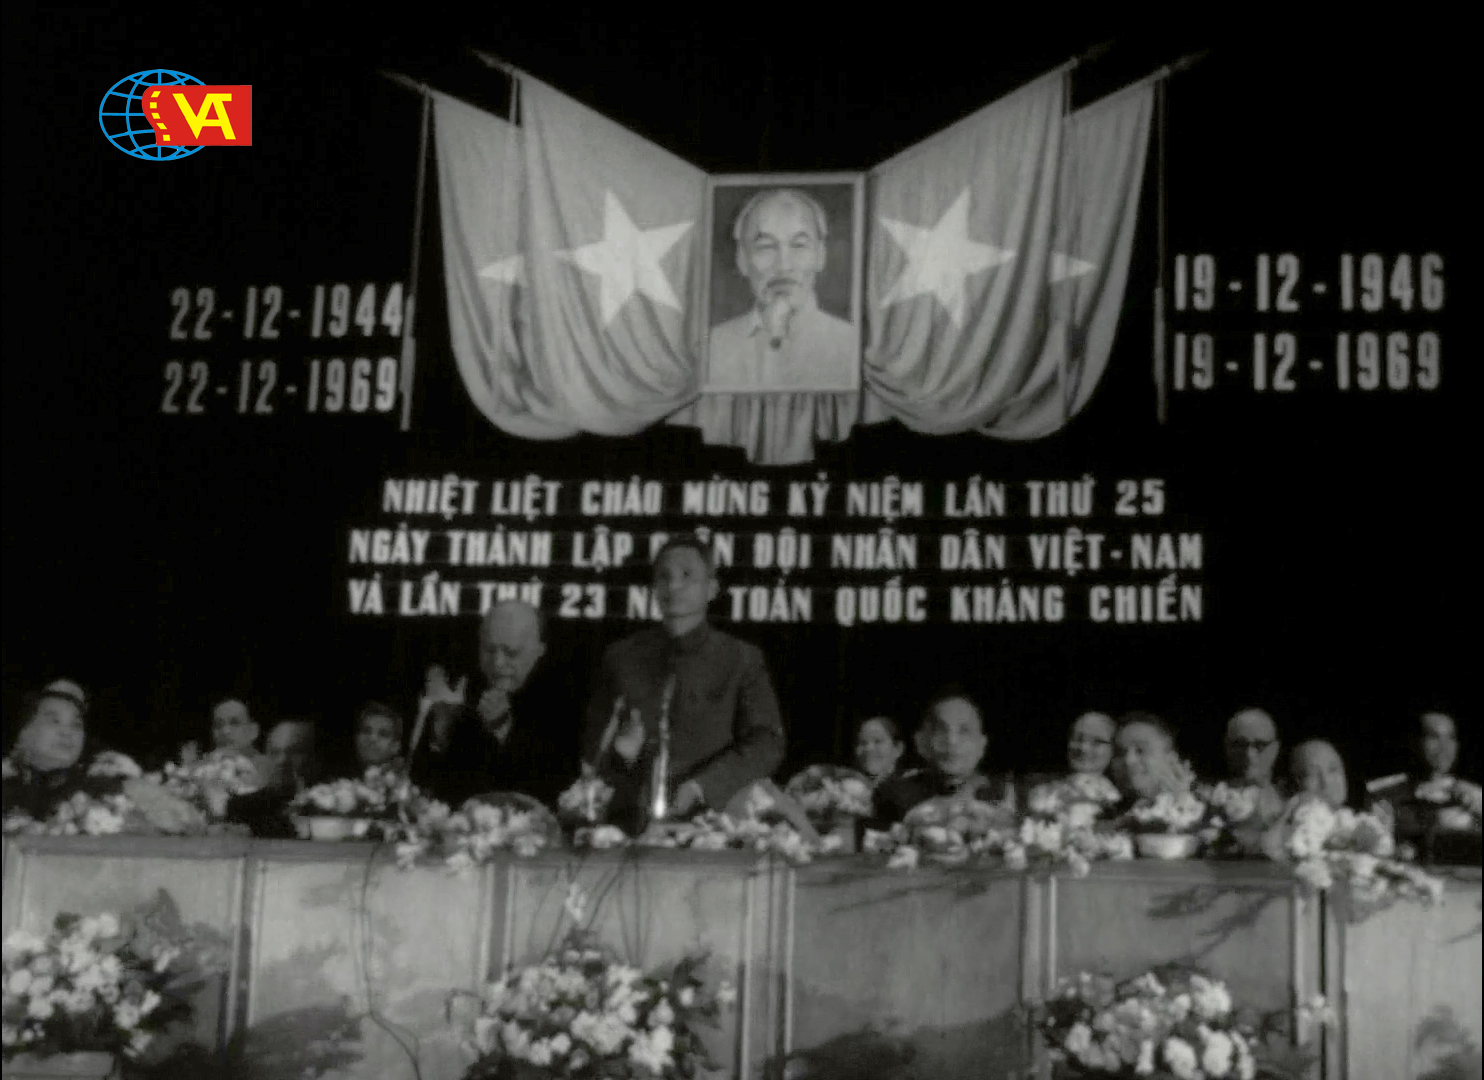 Chào mừng Kỷ niệm 76 năm Toàn quốc kháng chiến và 78 năm Ngày thành lập Quân đội Nhân dân Việt Nam